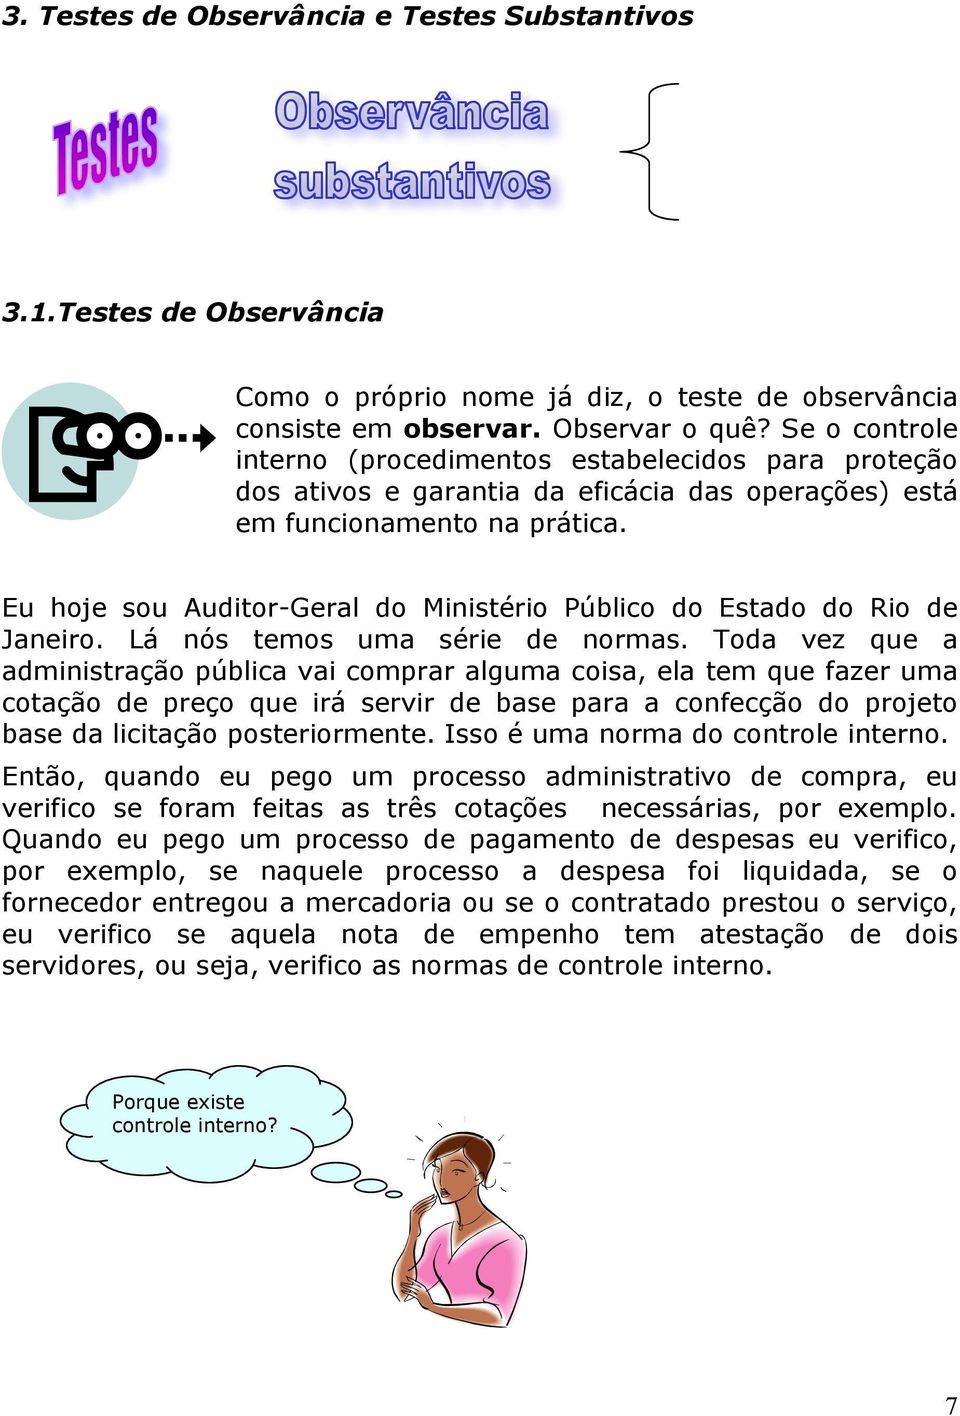 Eu hoje sou Auditor-Geral do Ministério Público do Estado do Rio de Janeiro. Lá nós temos uma série de normas.